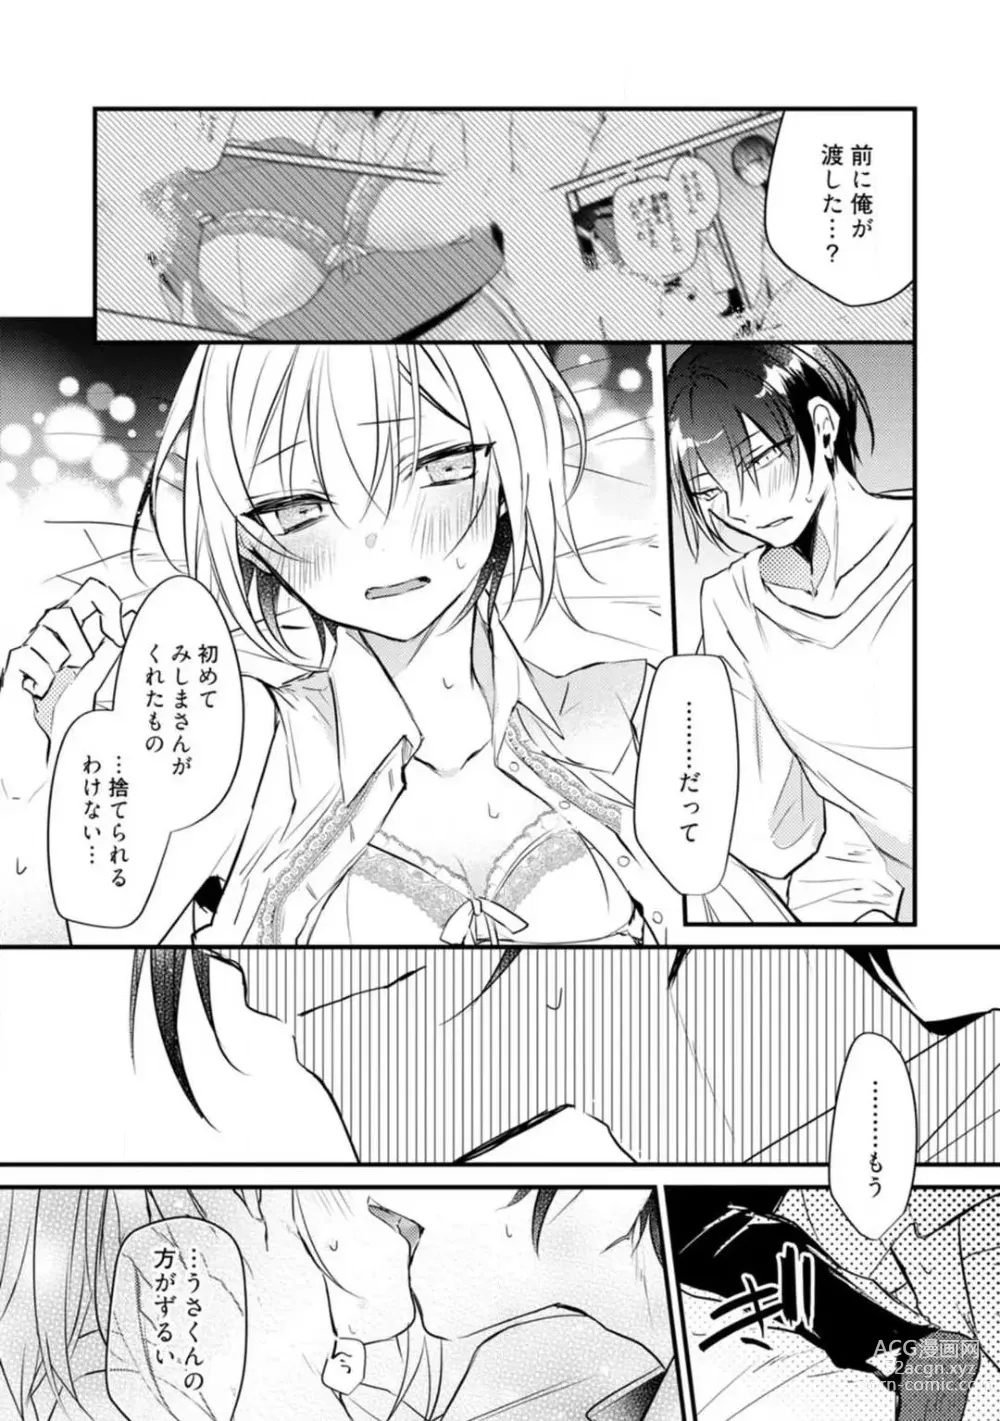 Page 403 of manga Change Drug 1-12